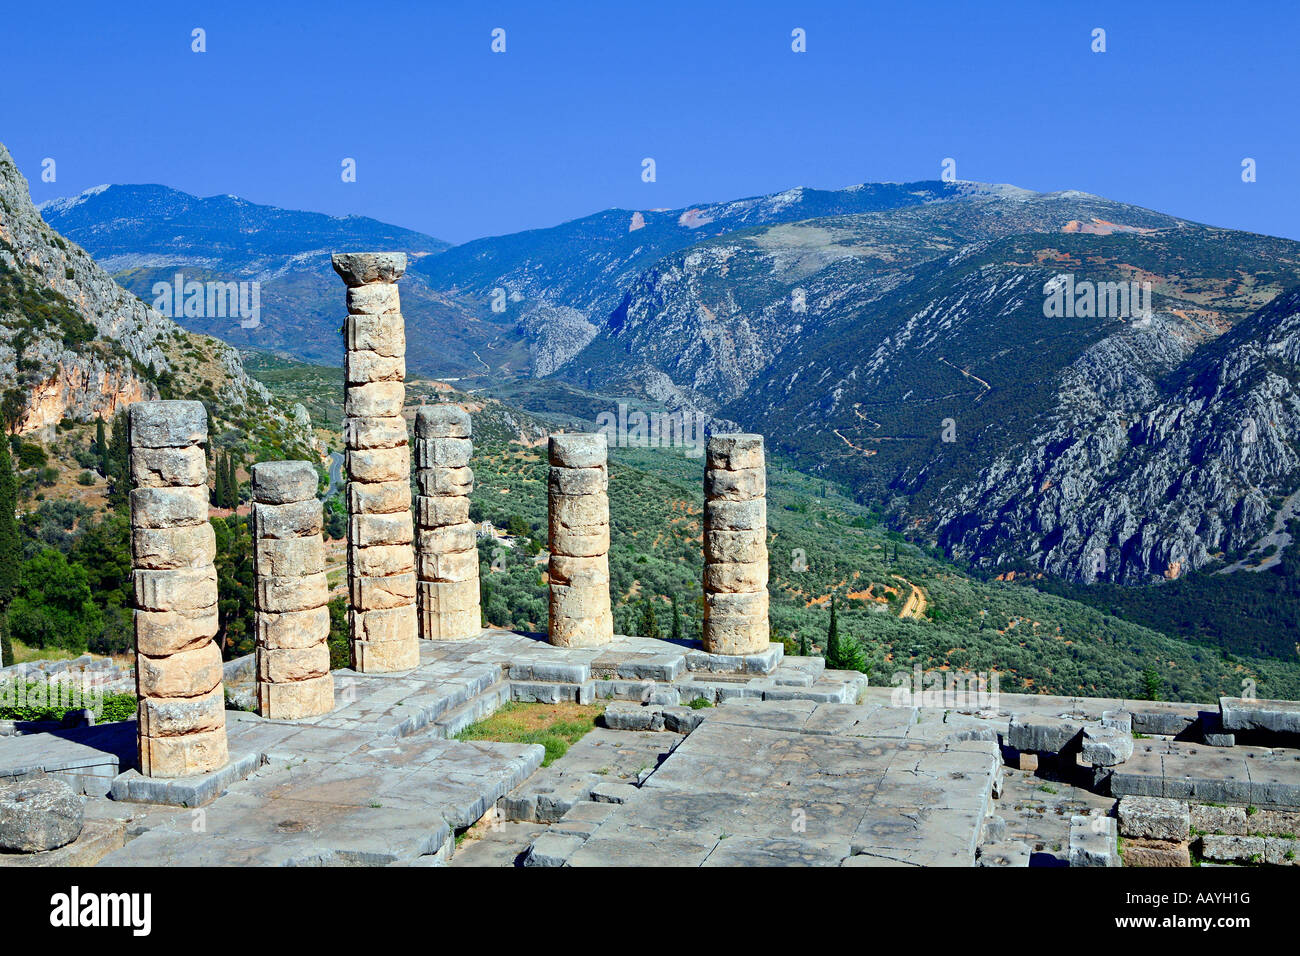 The temple of Apollo at Delphi Greece Stock Photo